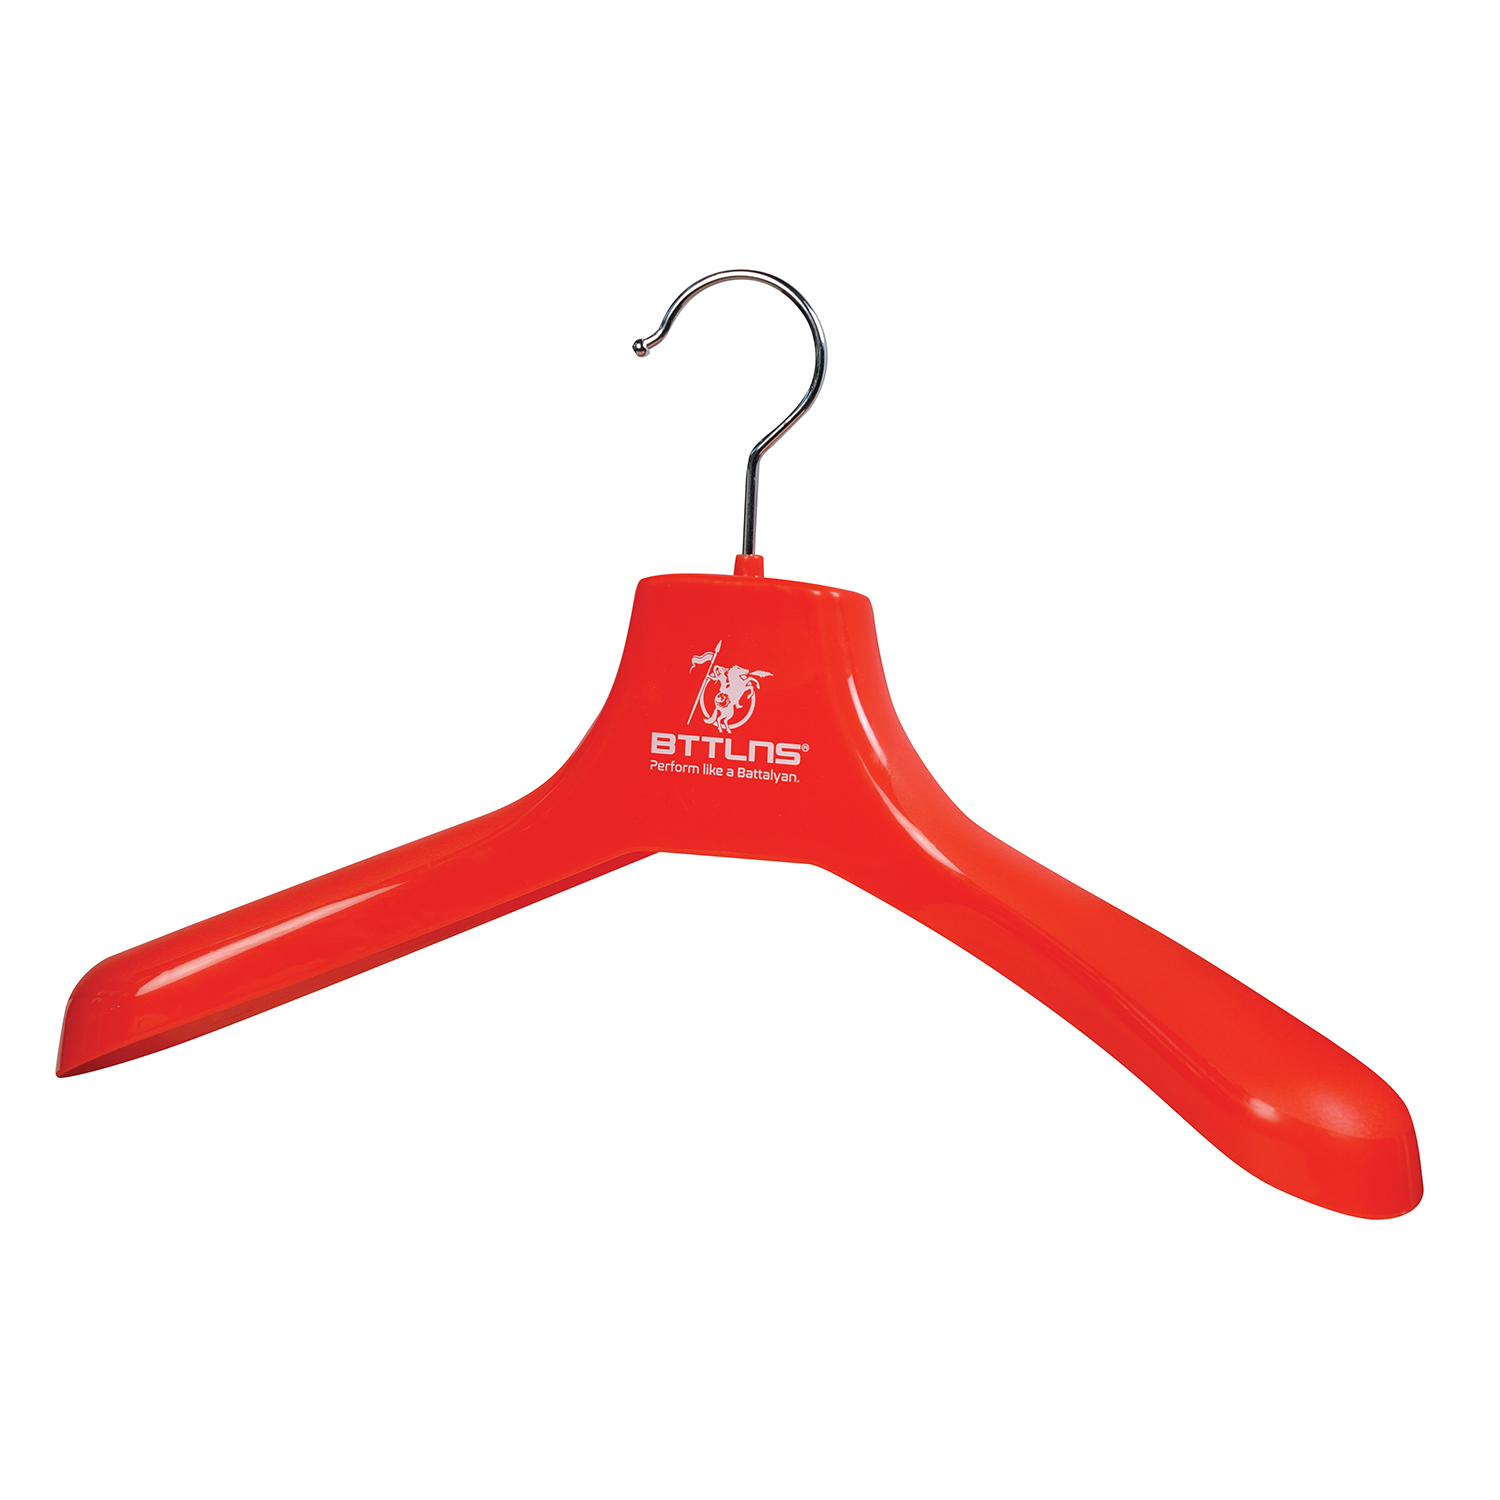 BTTLNS Wetsuit clothing hanger Defender 2.0 red  0320001-123